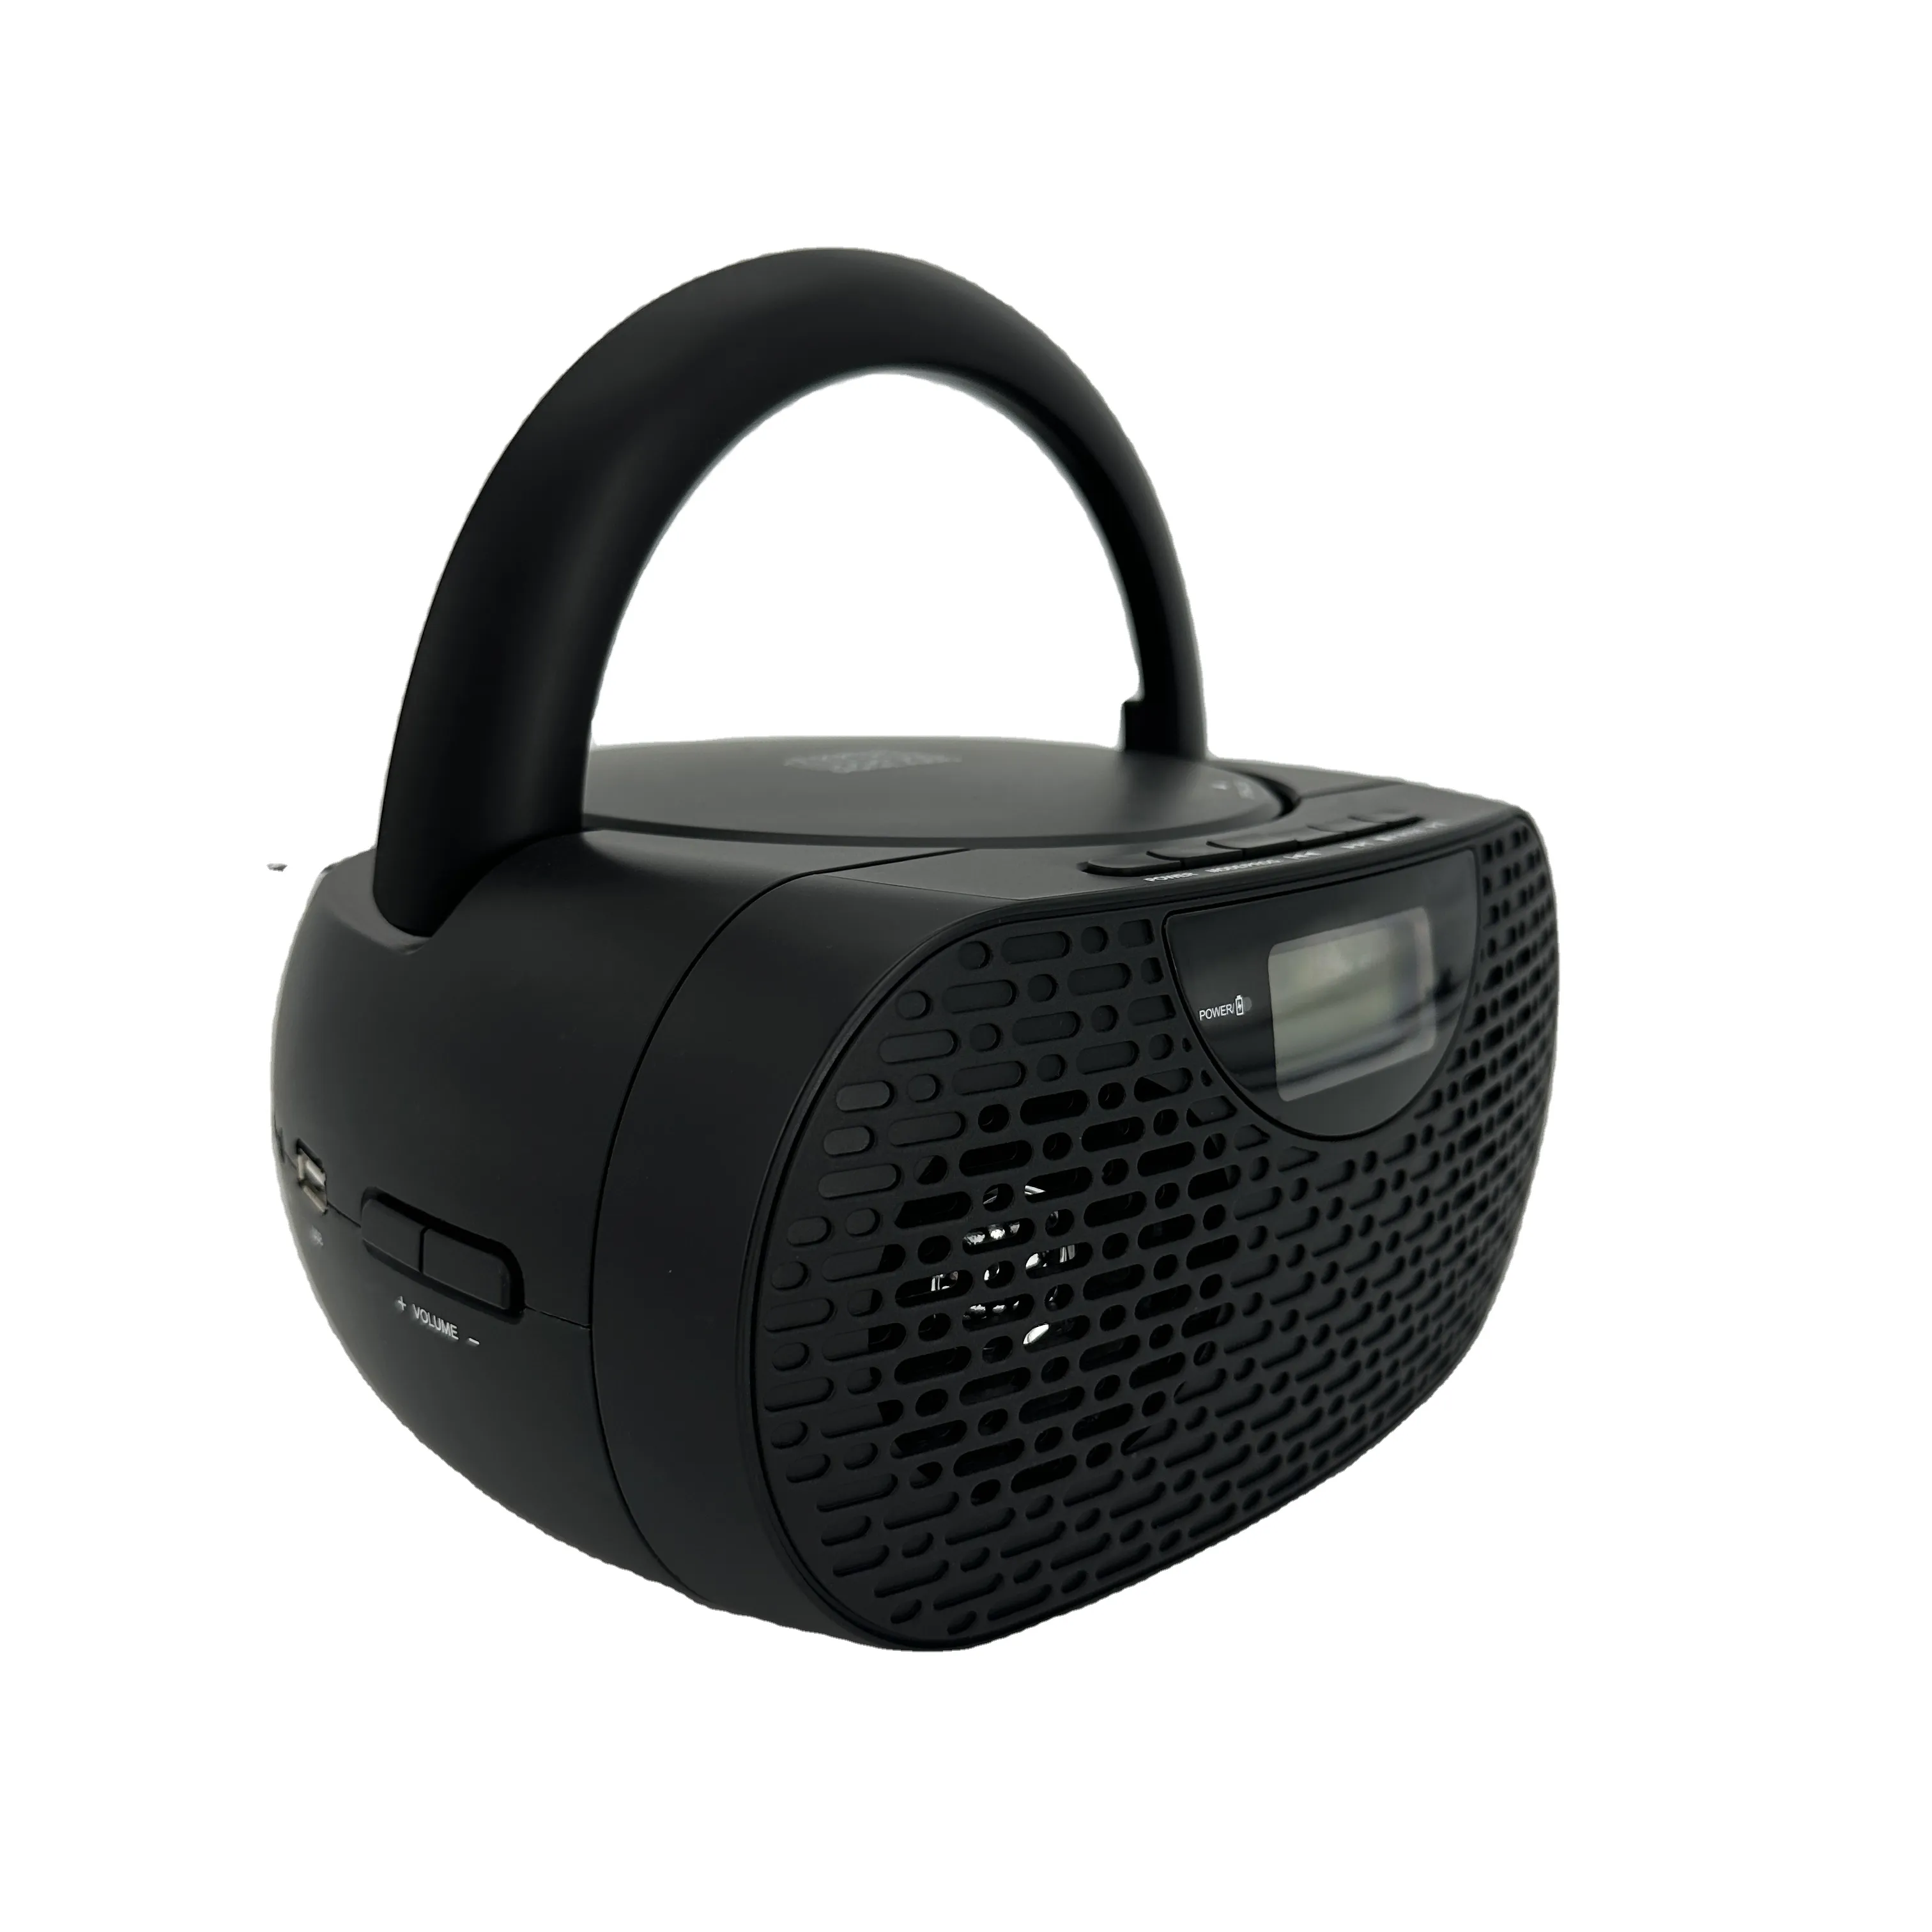 Bluetooth hoparlörler renkli ışıklar mikrofon FM radyo, açık hoparlörler için Bluetooth kablosuz Loud Boom kutusu parti